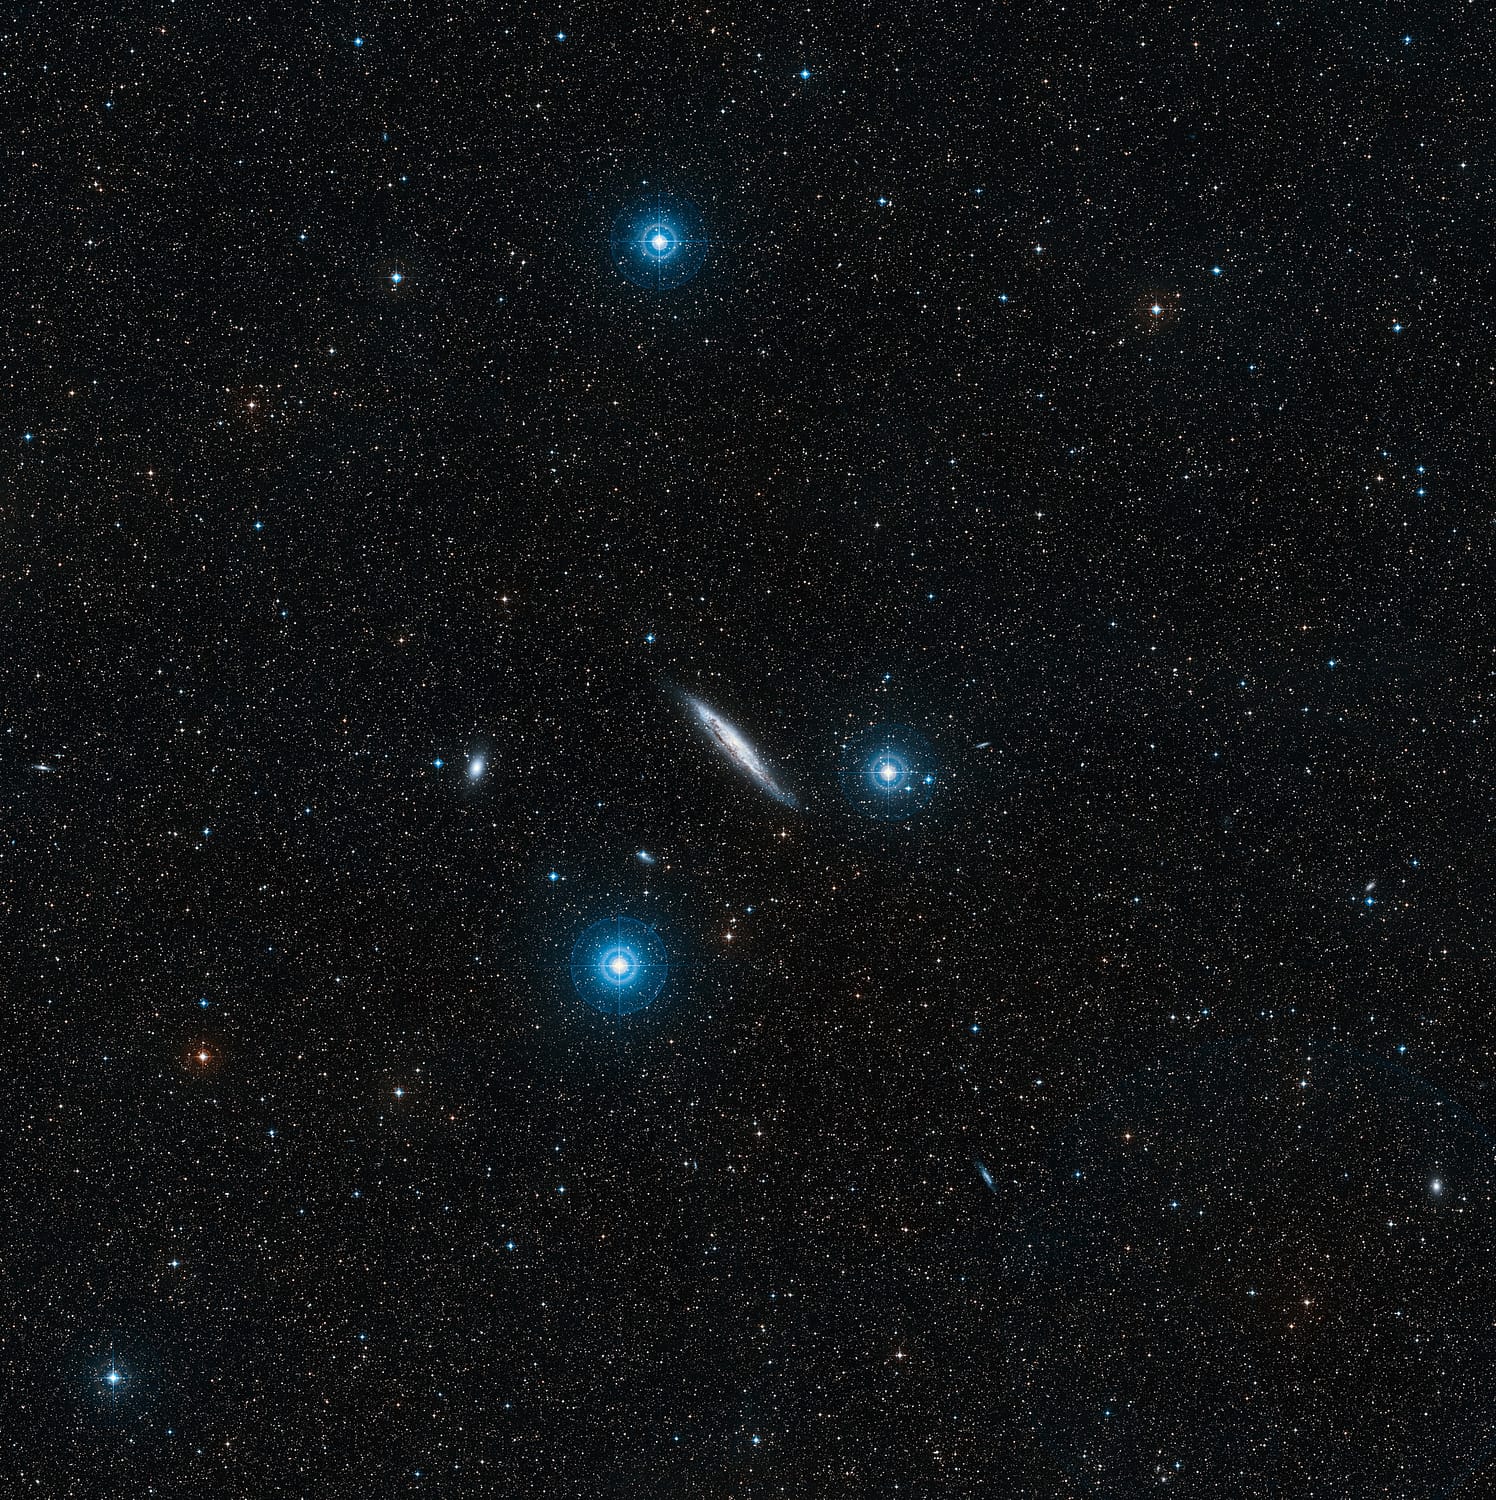 Die Spiralgalaxie NGC 4945 liegt zwischen drei Sternen der 4. Helligkeitsklasse, die mit bloßen Augen sichtbar sind